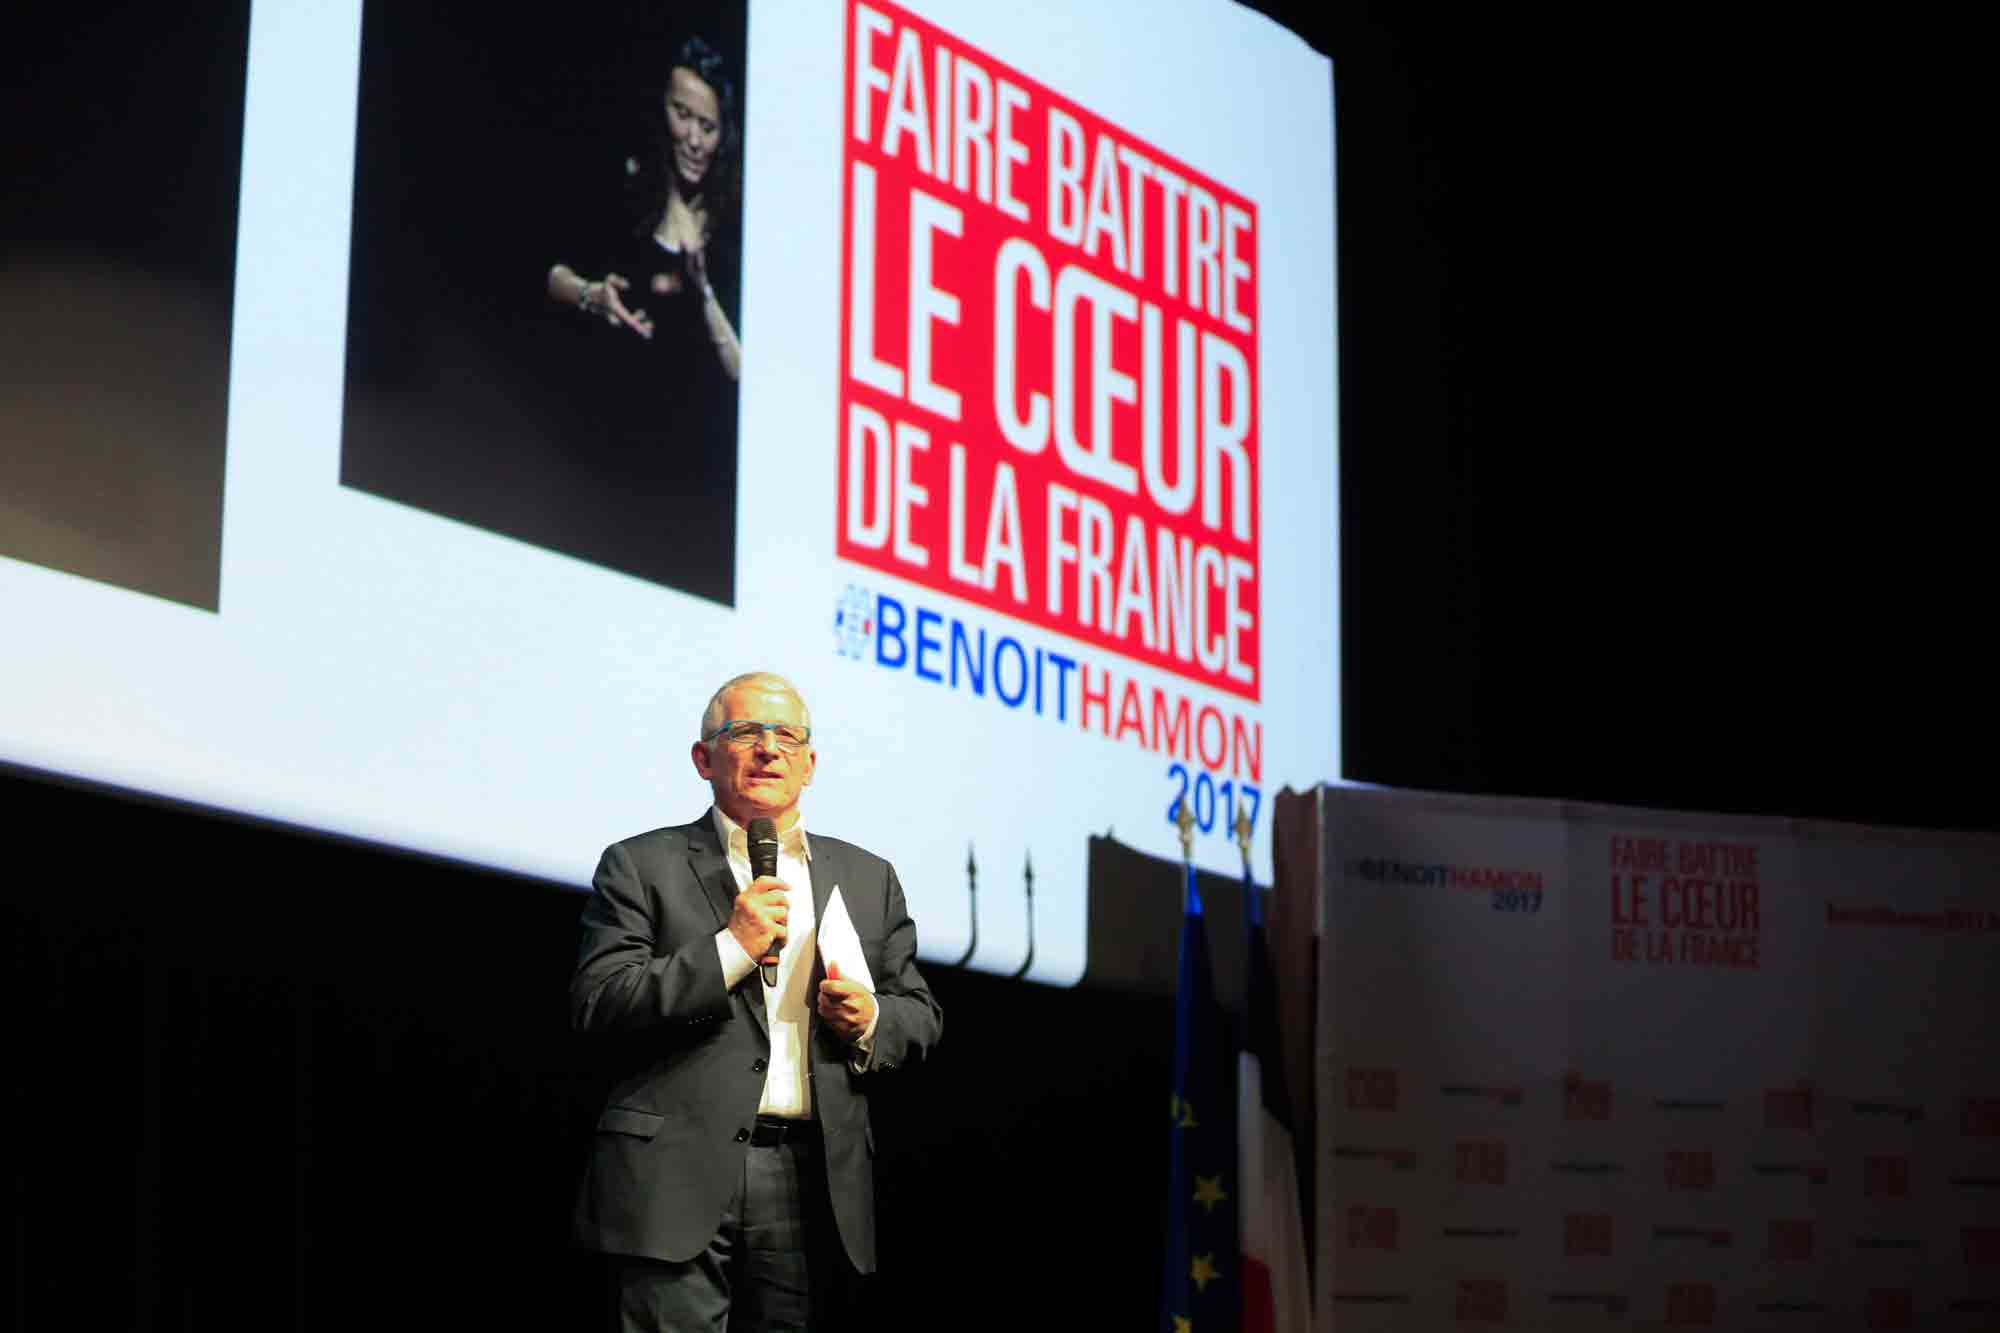 Le candidat de la primaire de la Gauche, Benoit Hamon était en meeting à Toulouse vendredi 20 janvier. C'est dans la ville rose qui termine sa campagne, à deux jours du premier tour des primaires de la gauche. /Photo S. Thuault-Ney